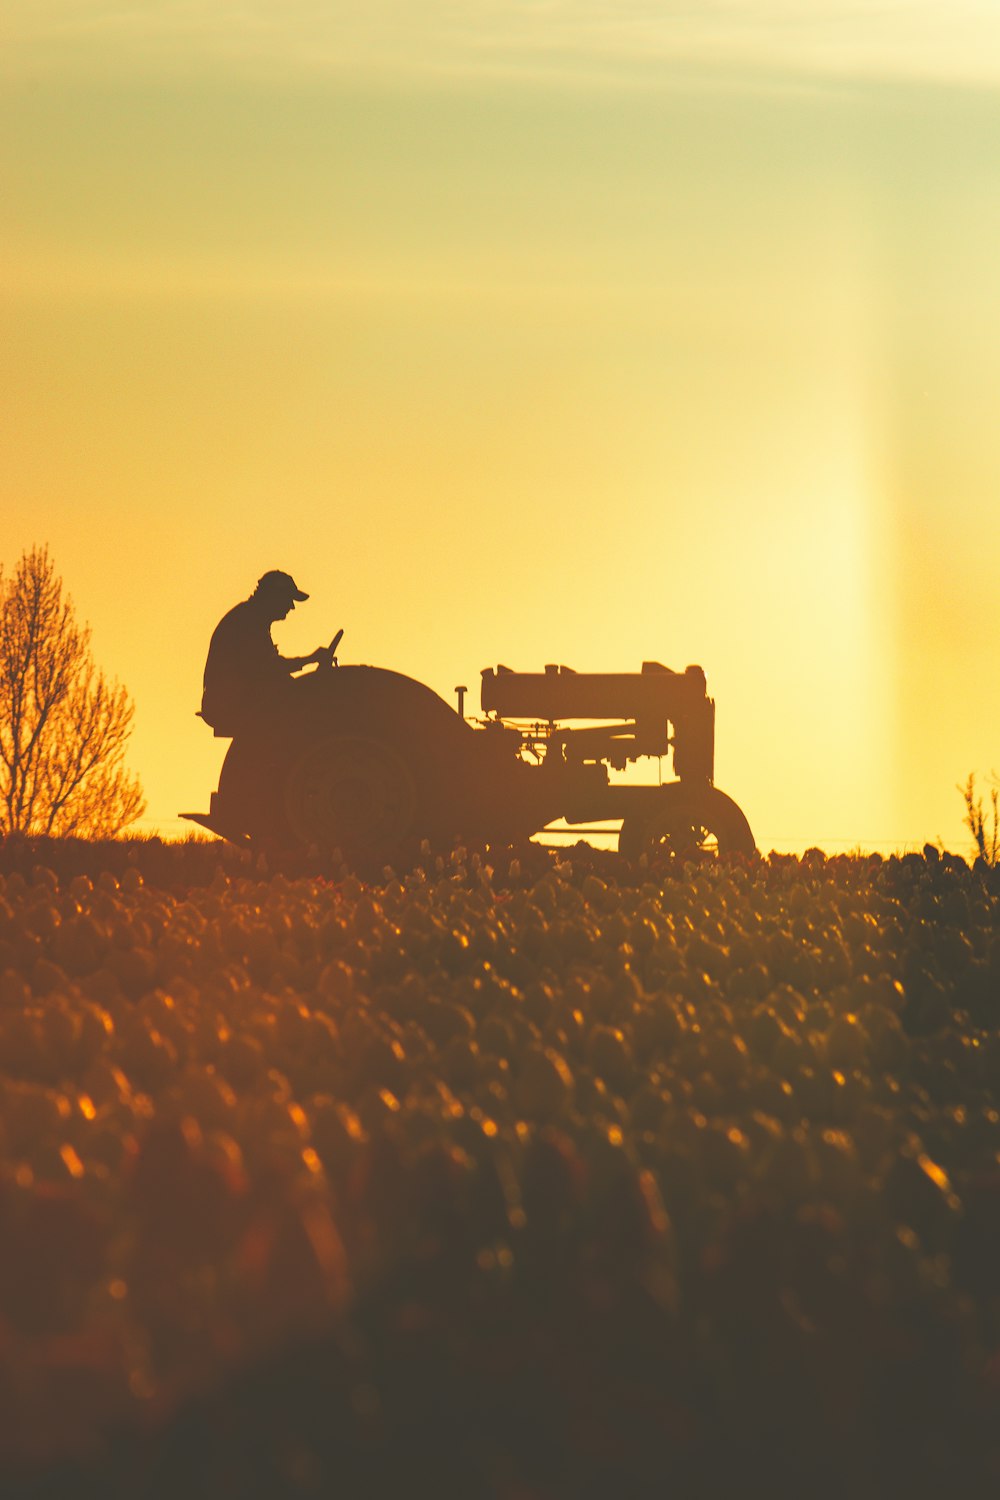 eine Person, die bei Sonnenuntergang auf einem Traktor auf einem Feld fährt